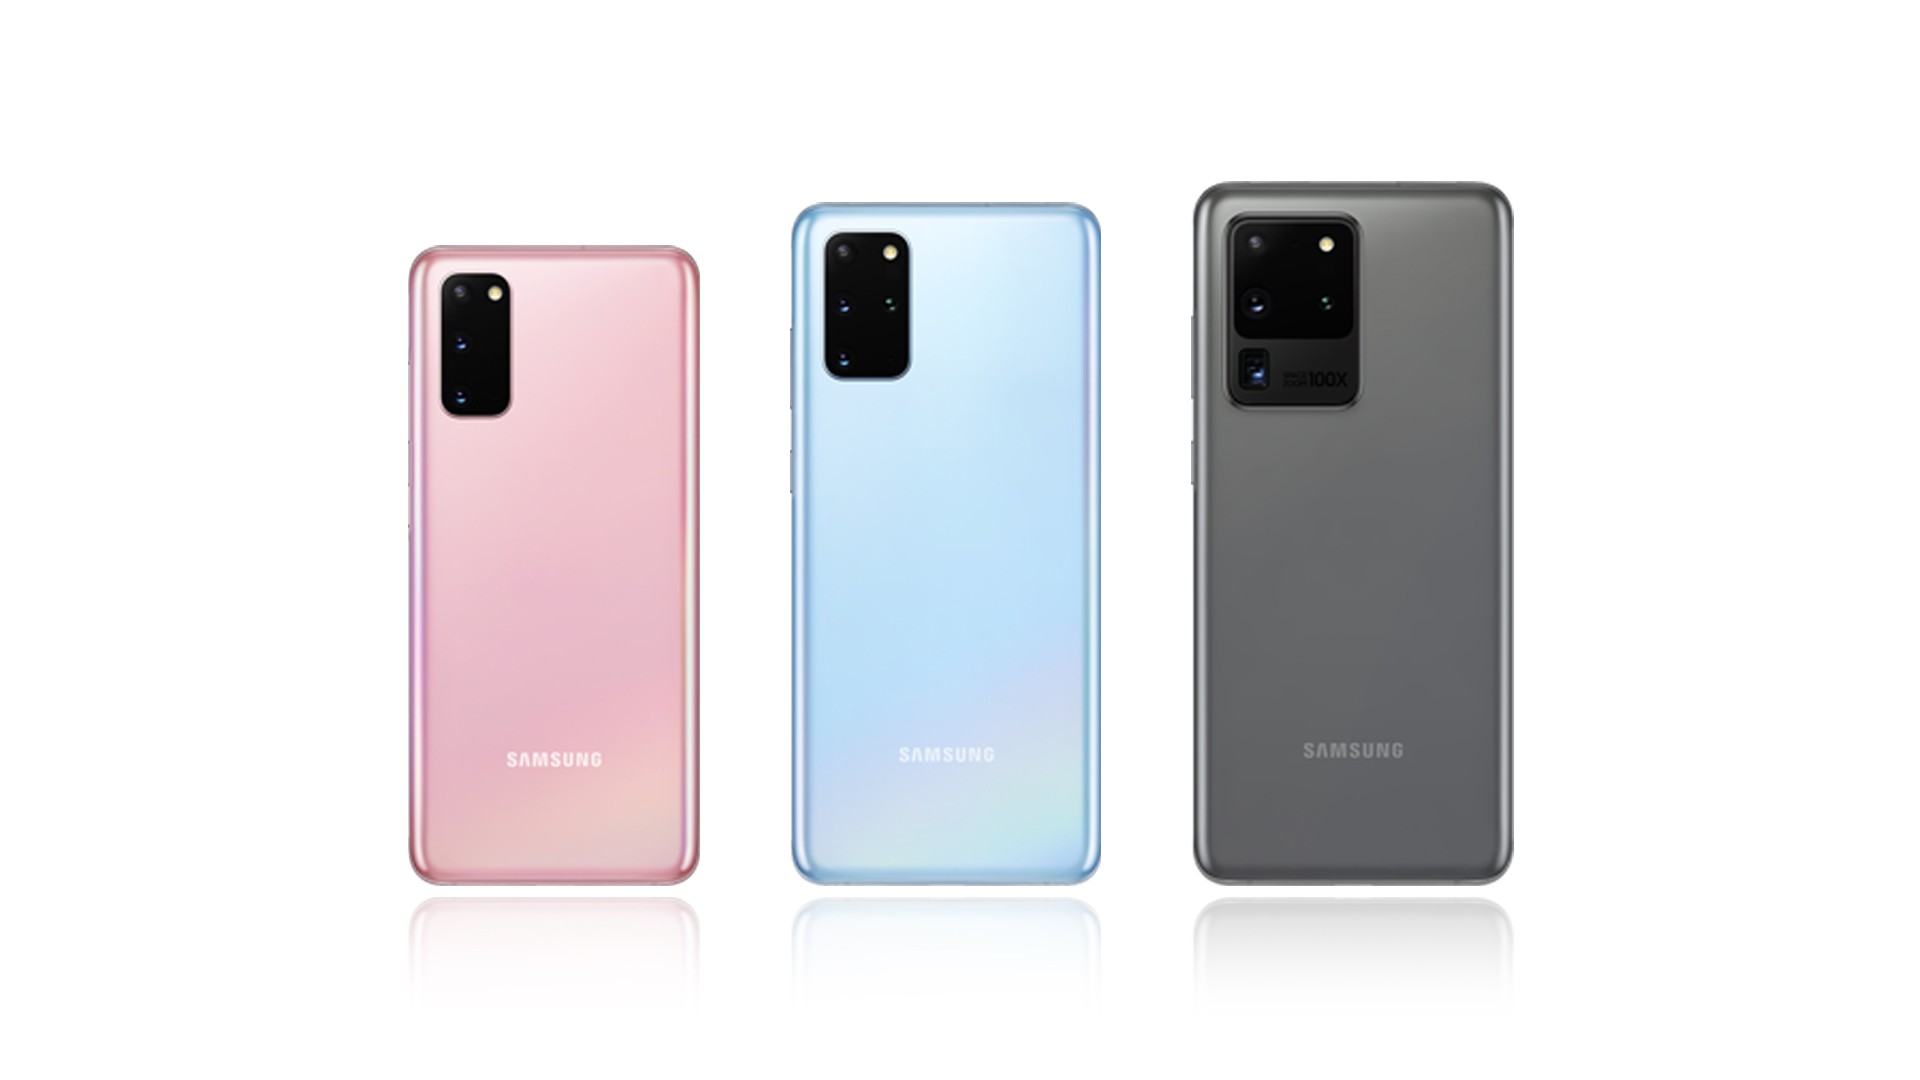 Família Samsung S20 (S20, S20+ e S20 Ultra) (Foto: Divulgação)